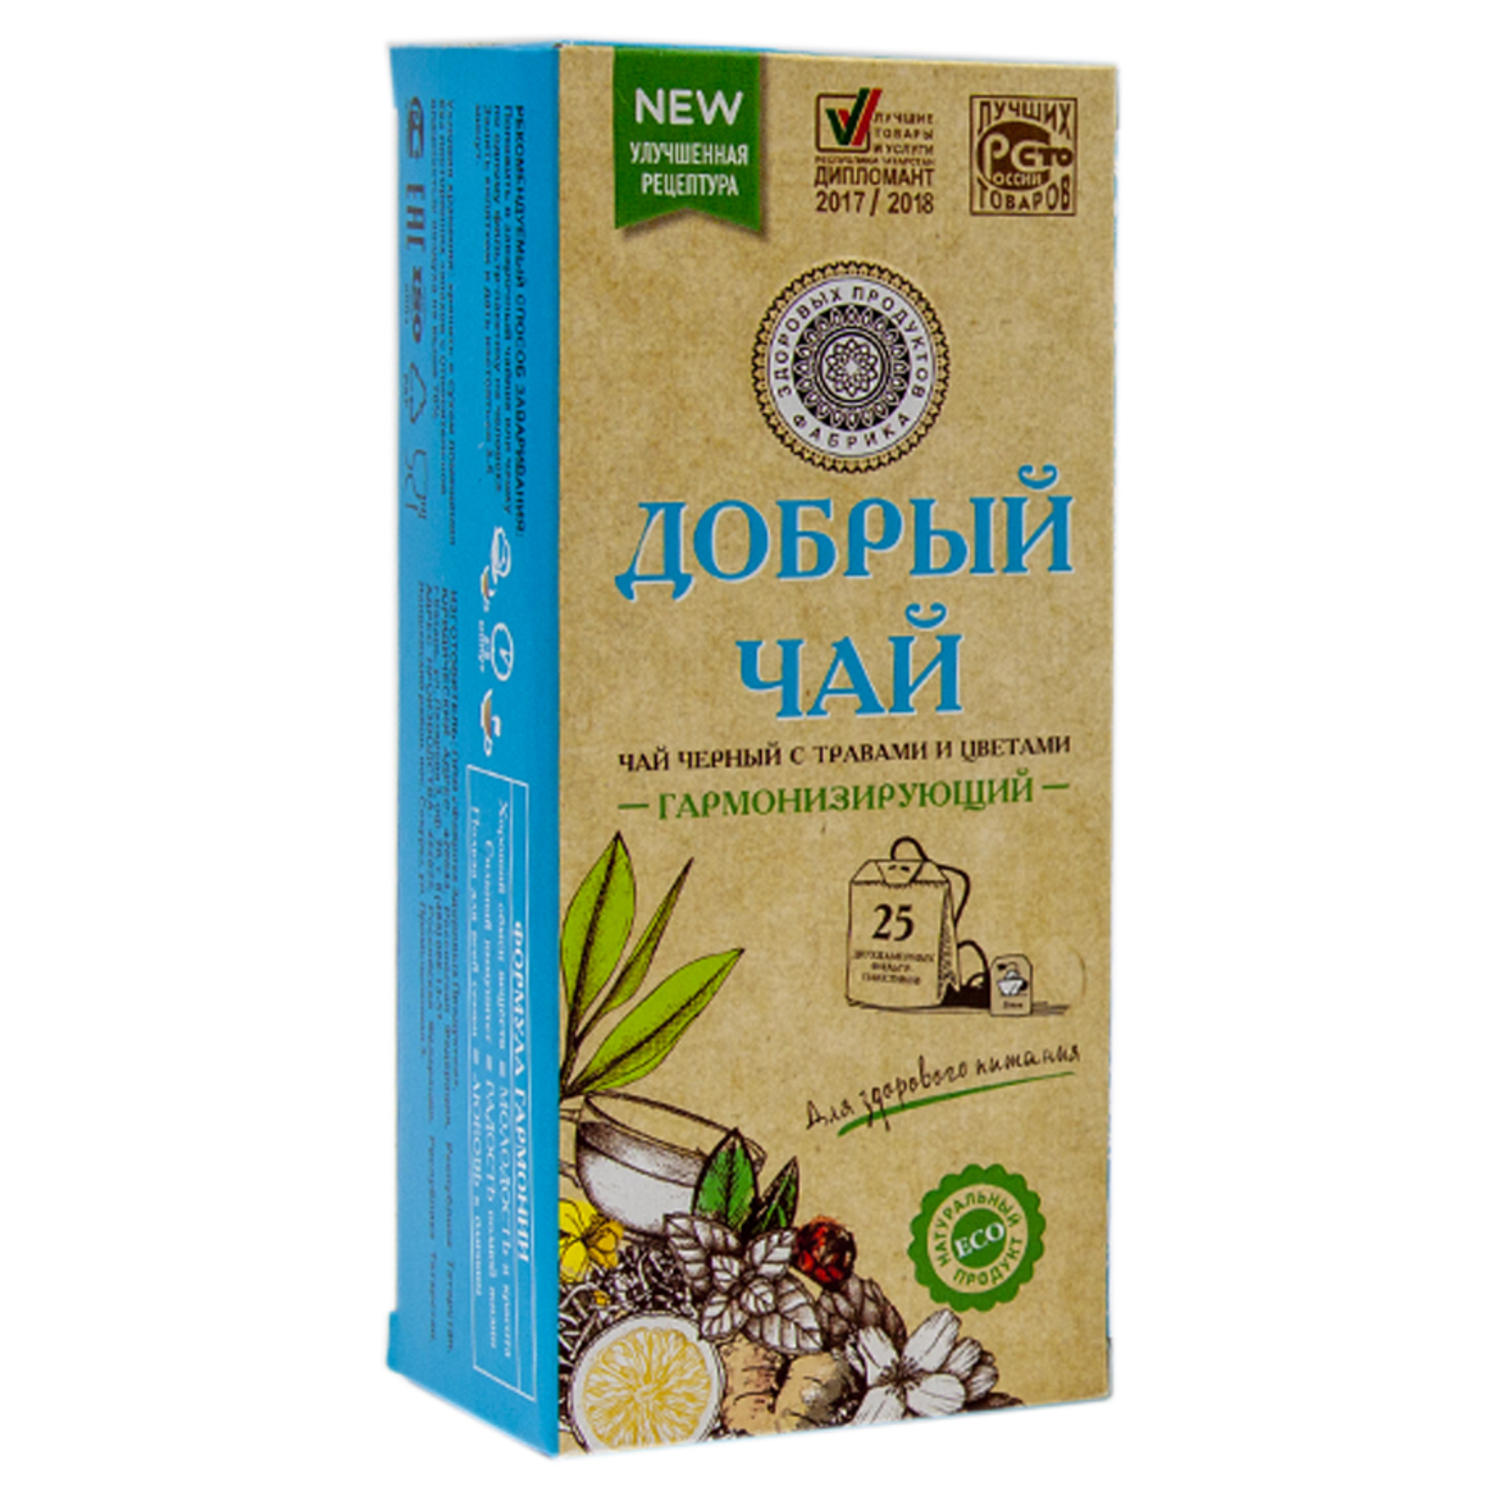 Чай Фабрика Здоровых Продуктов Добрый с травами 1.5г*25пакетиков - фото 4